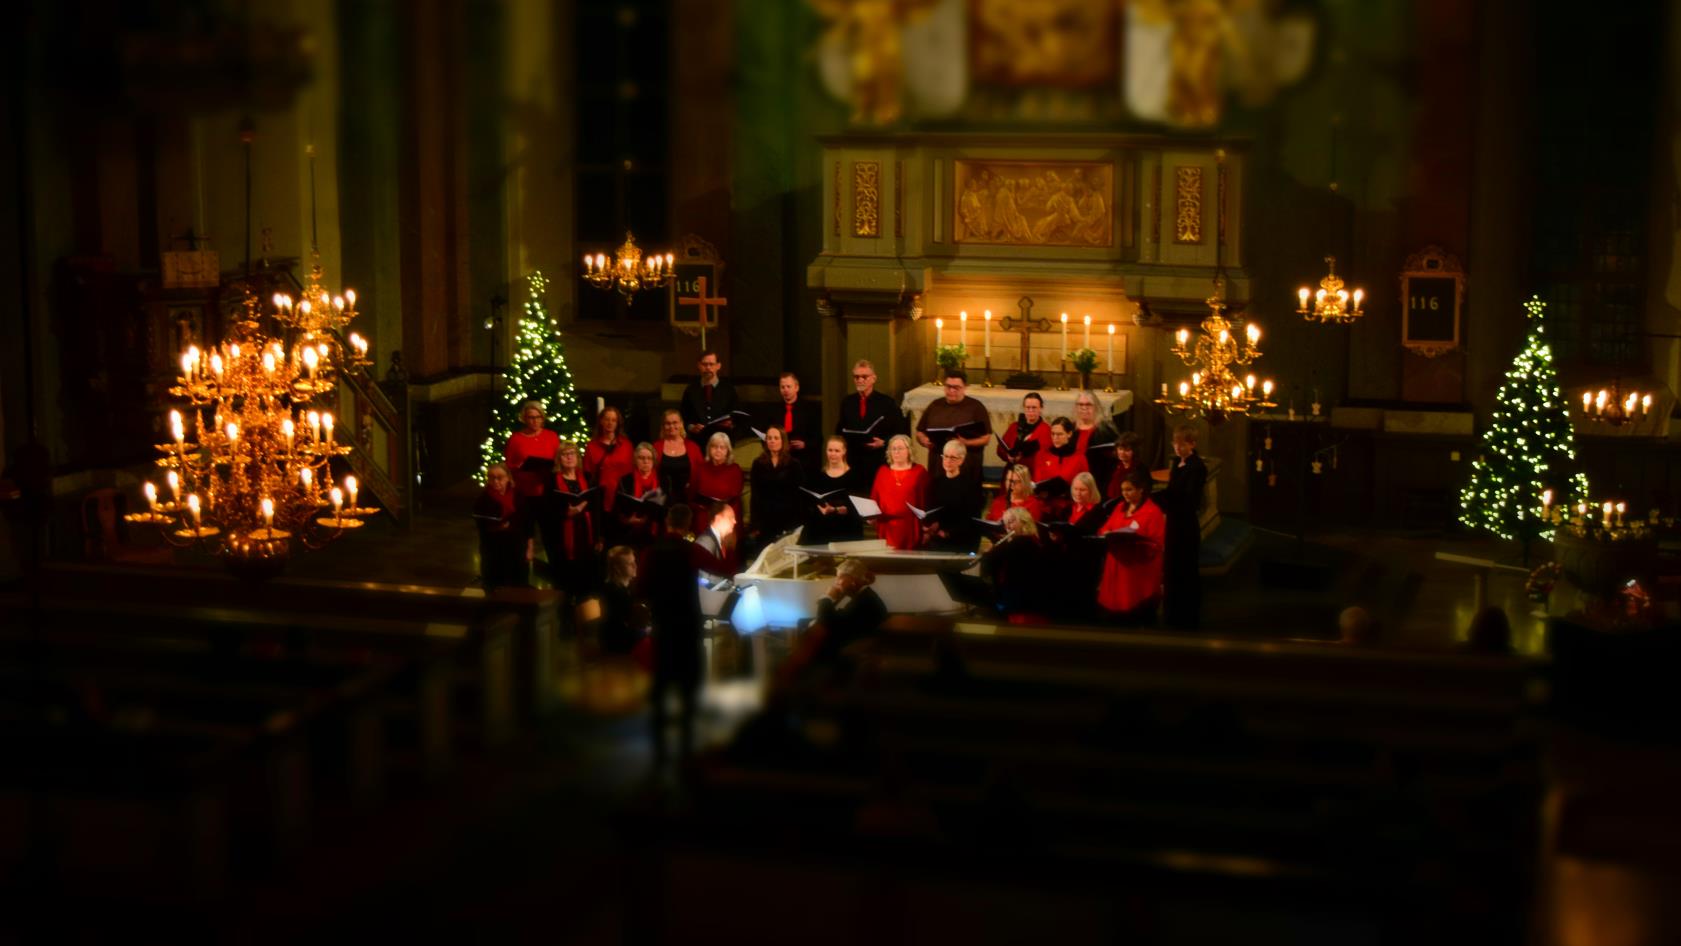 Hedesunda kyrkokör under julkonsert i vackra Hedesunda kyrka.